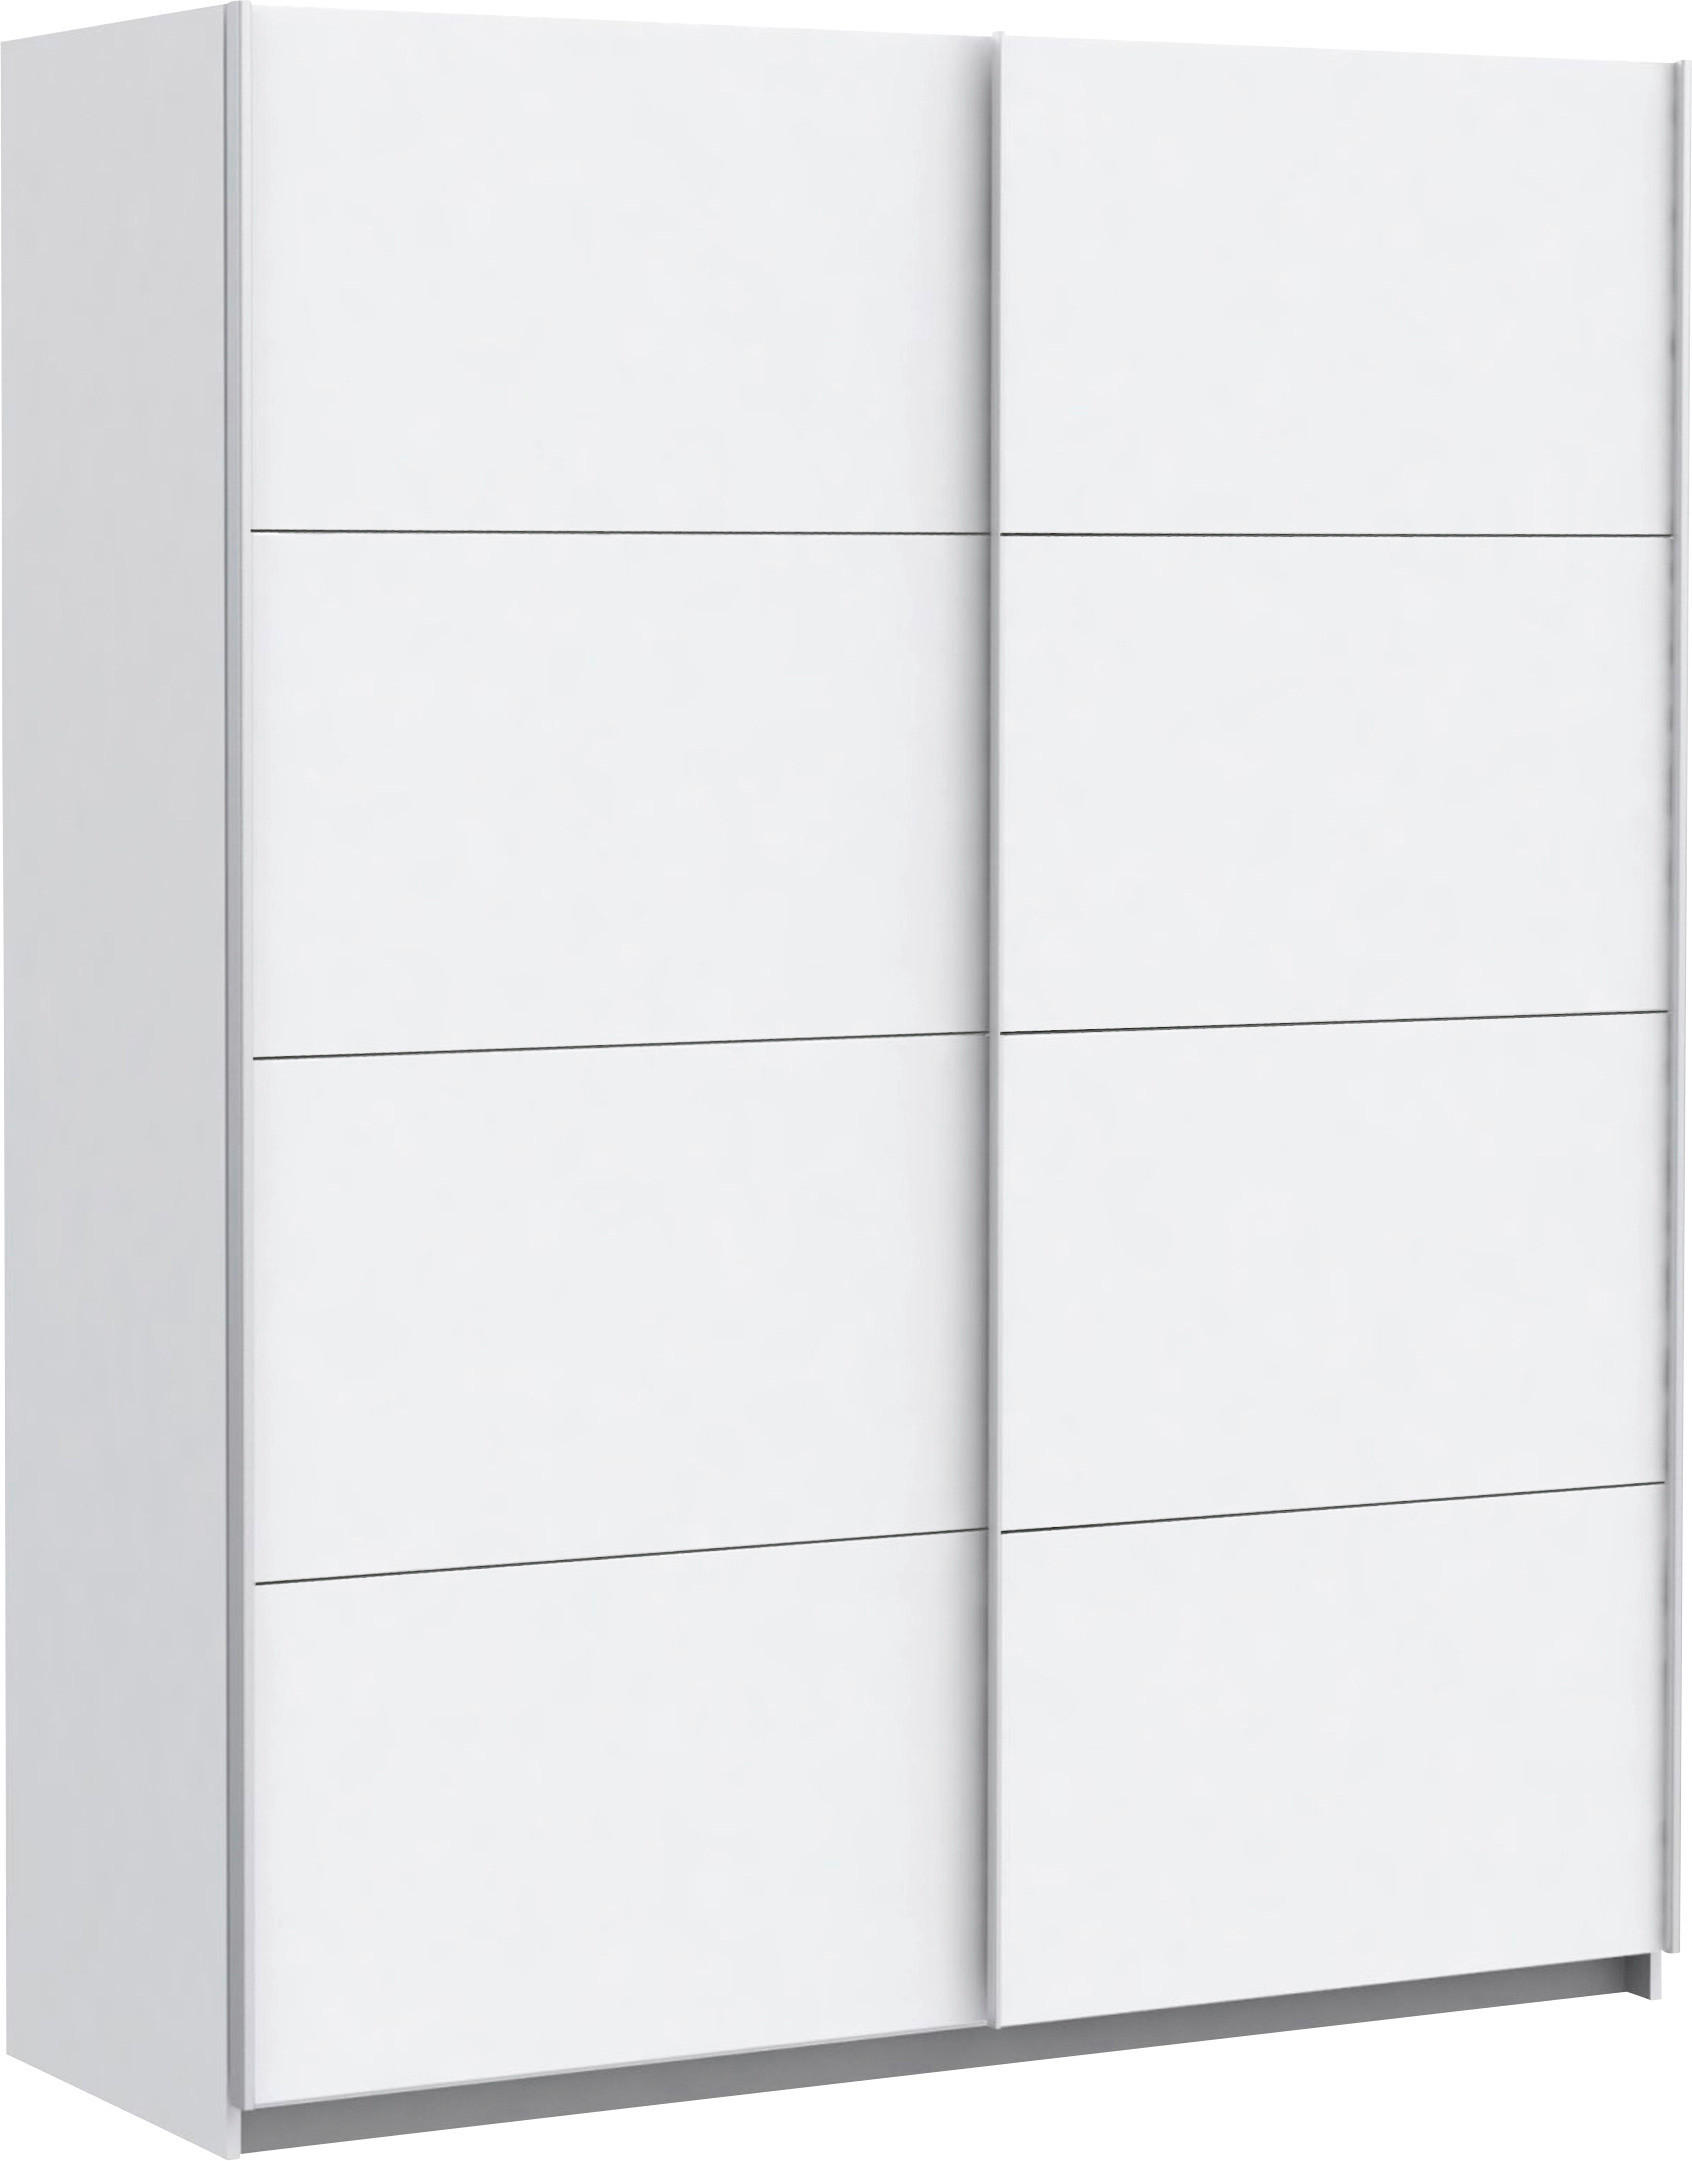 SCHWEBETÜRENSCHRANK in Weiß  - Silberfarben/Weiß, Design, Holzwerkstoff/Metall (170/210/61cm) - Ti'me